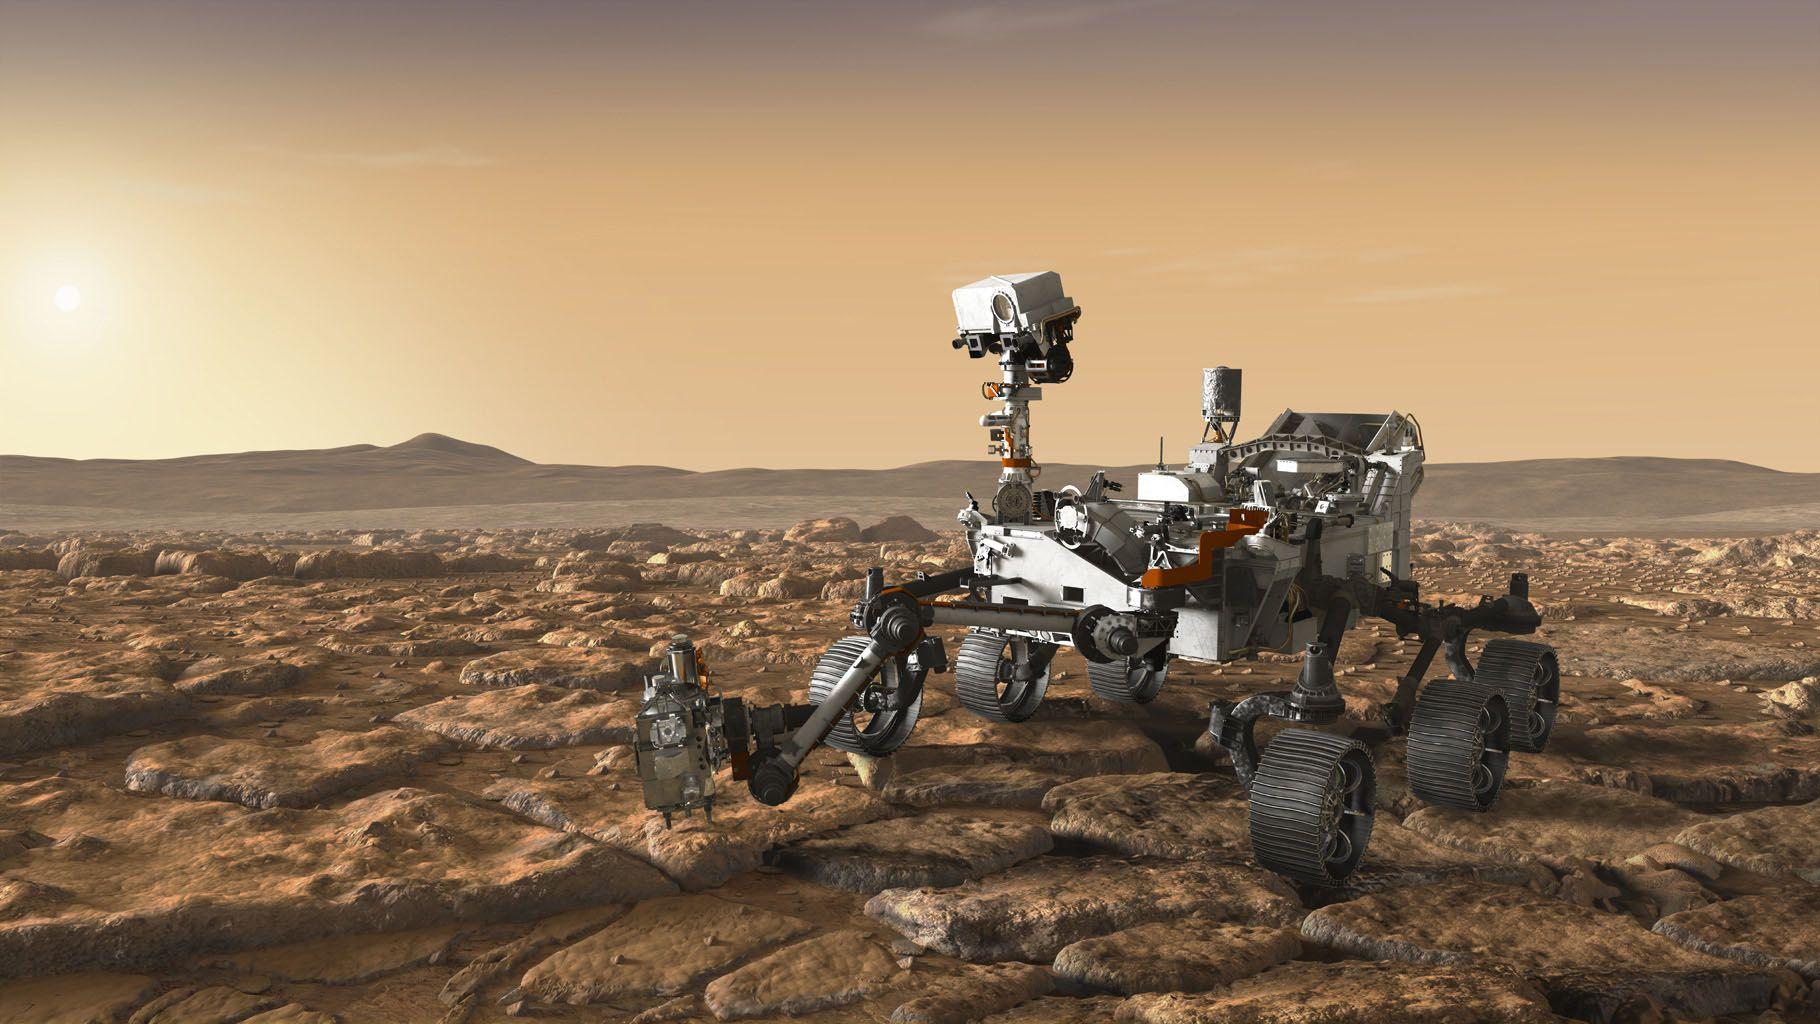 2020 NASA Logo - Space Image. NASA's Mars 2020 Rover Artist's Concept